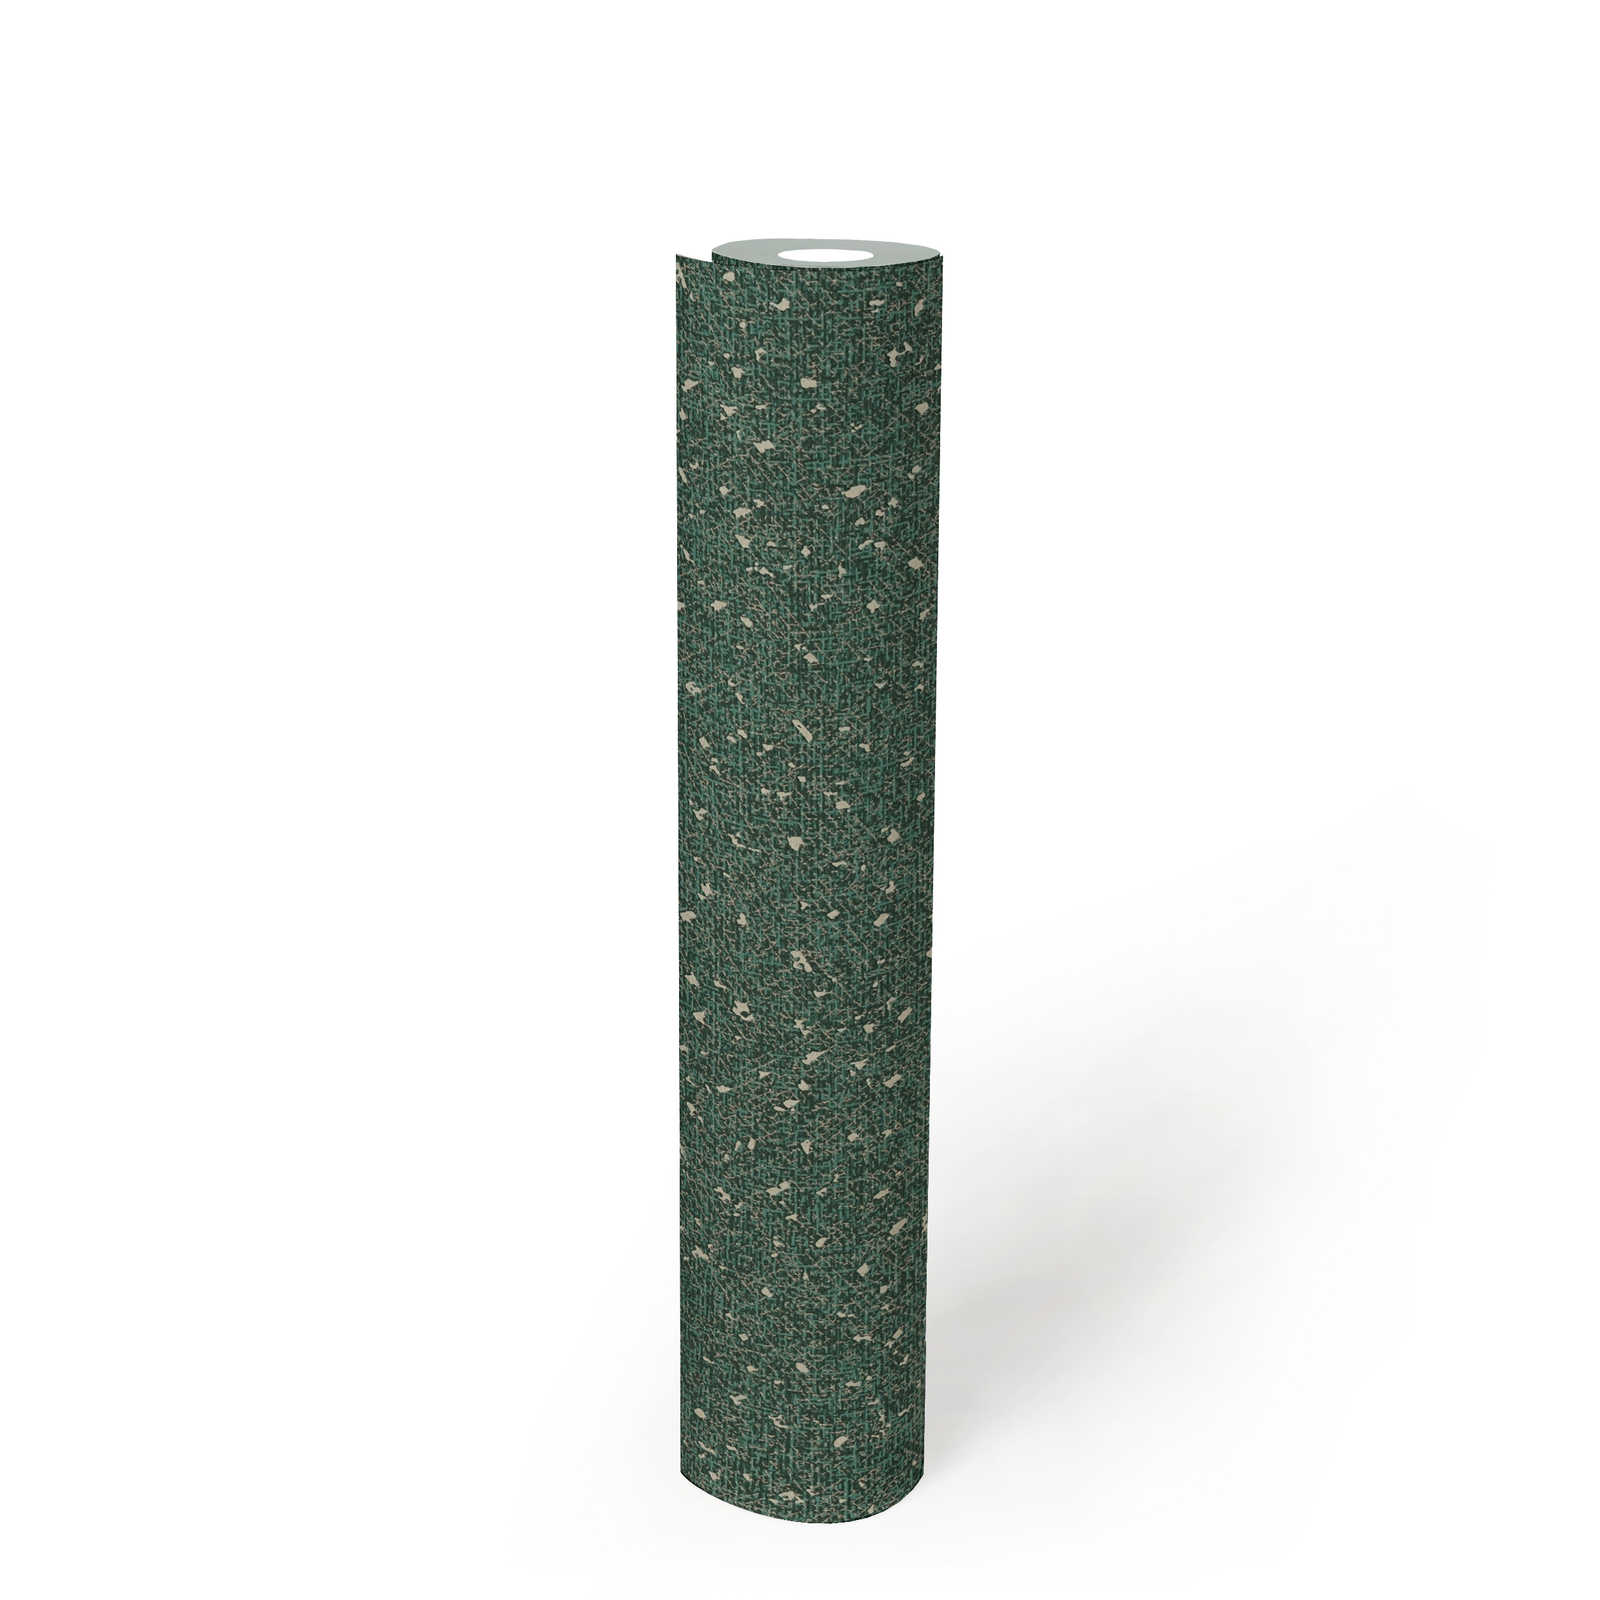             Papel pintado con estructura textil y acento metálico - Verde, Metálico
        